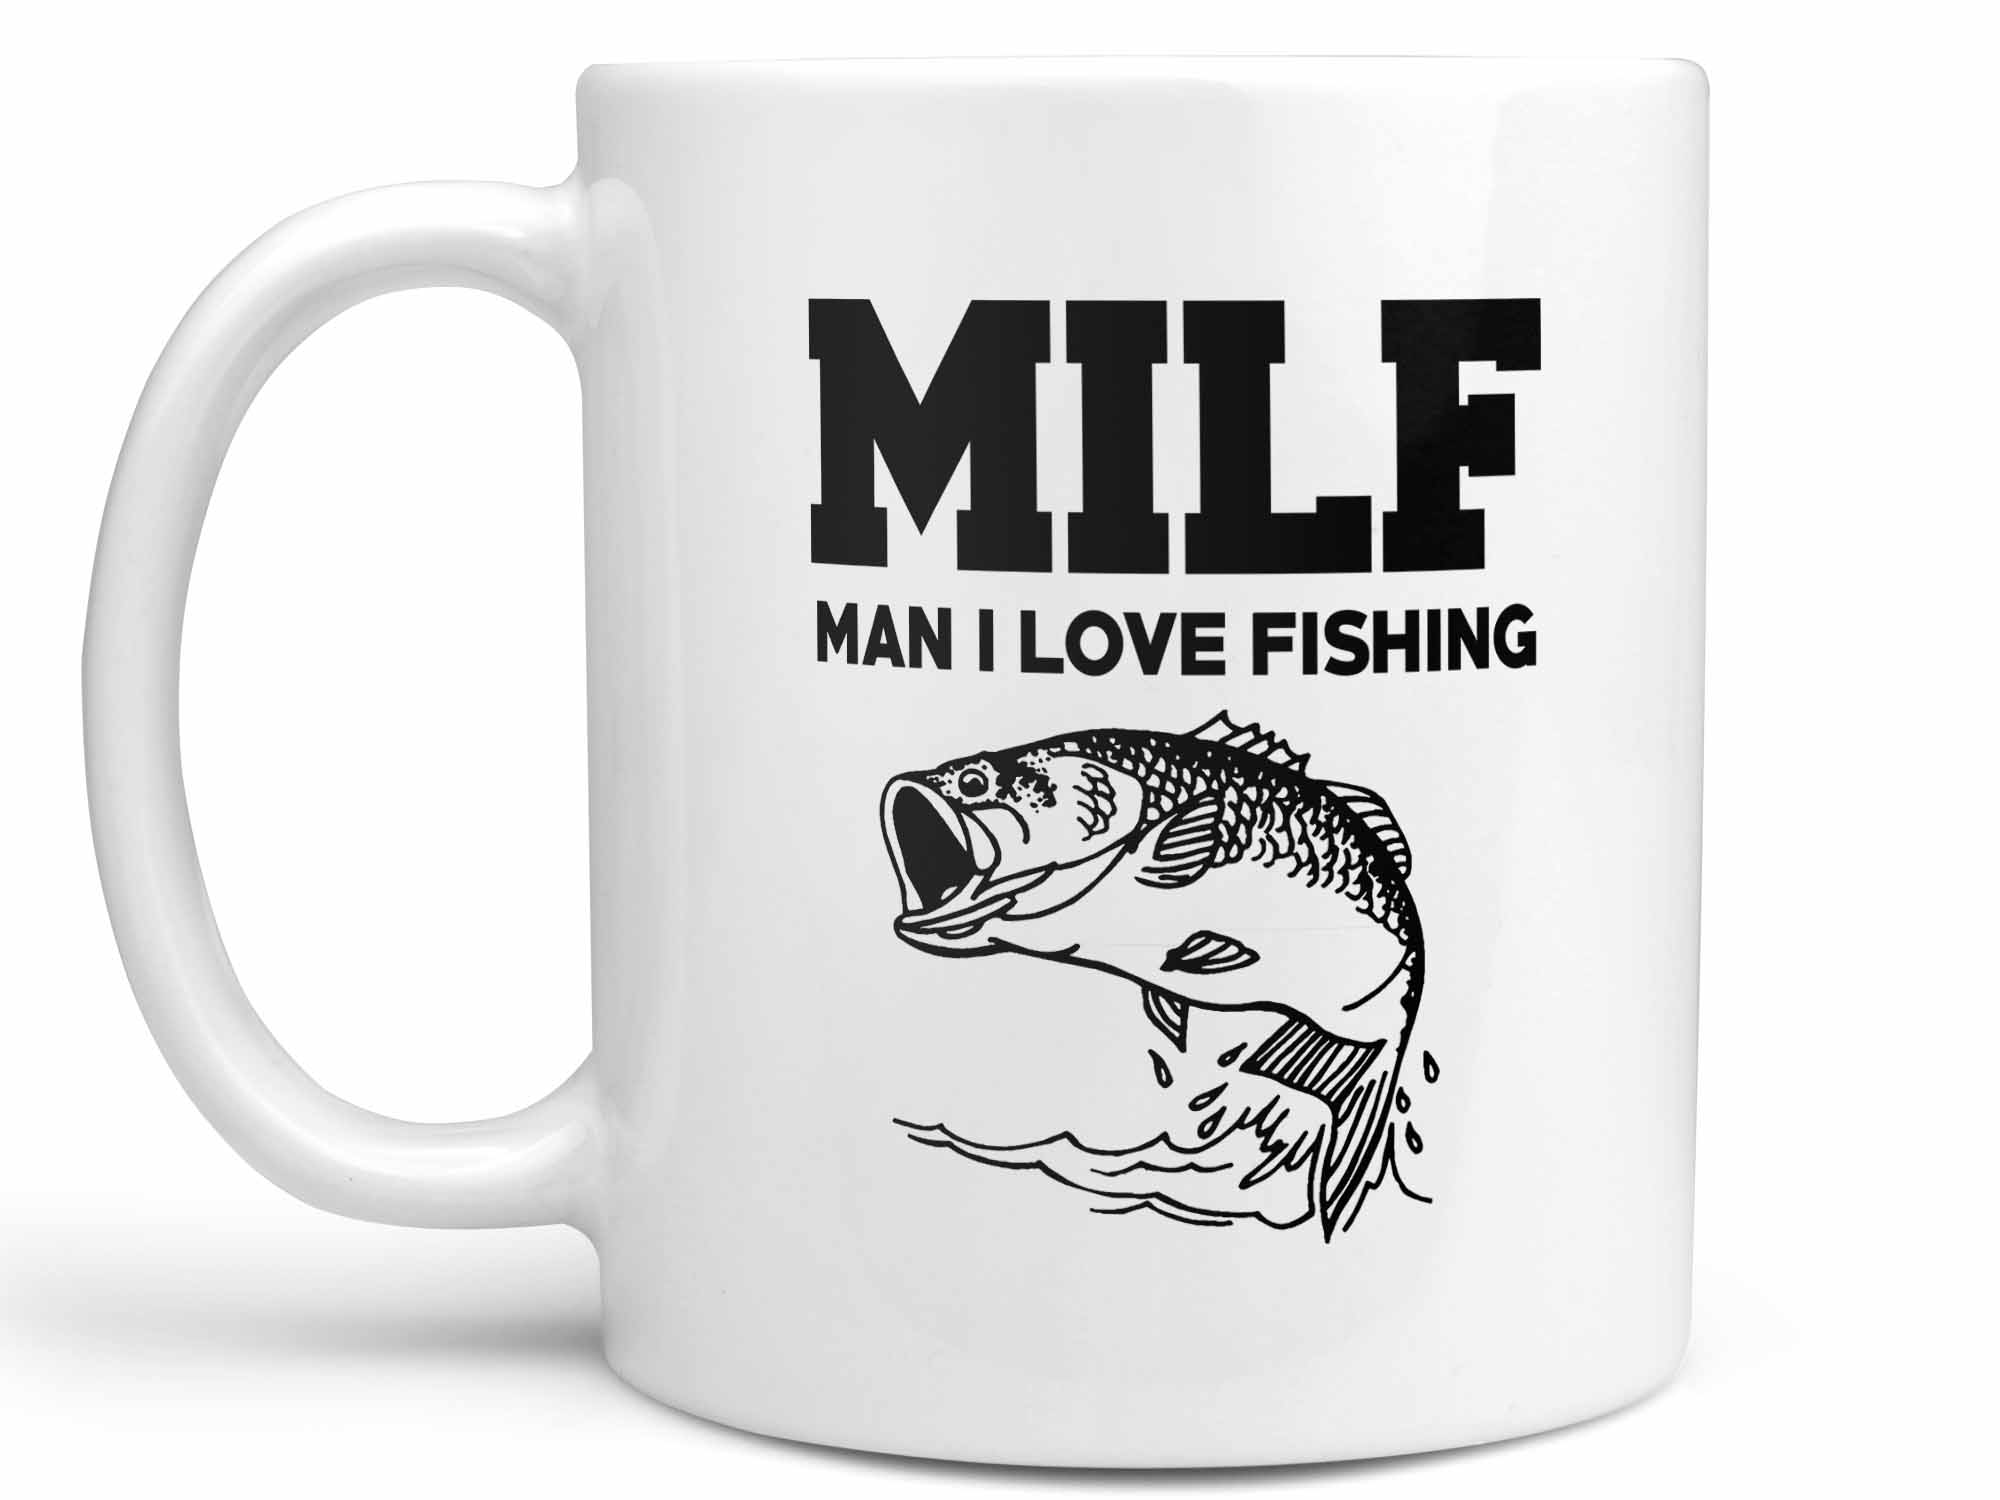 MILF Man I Love Fishing Coffee Mug